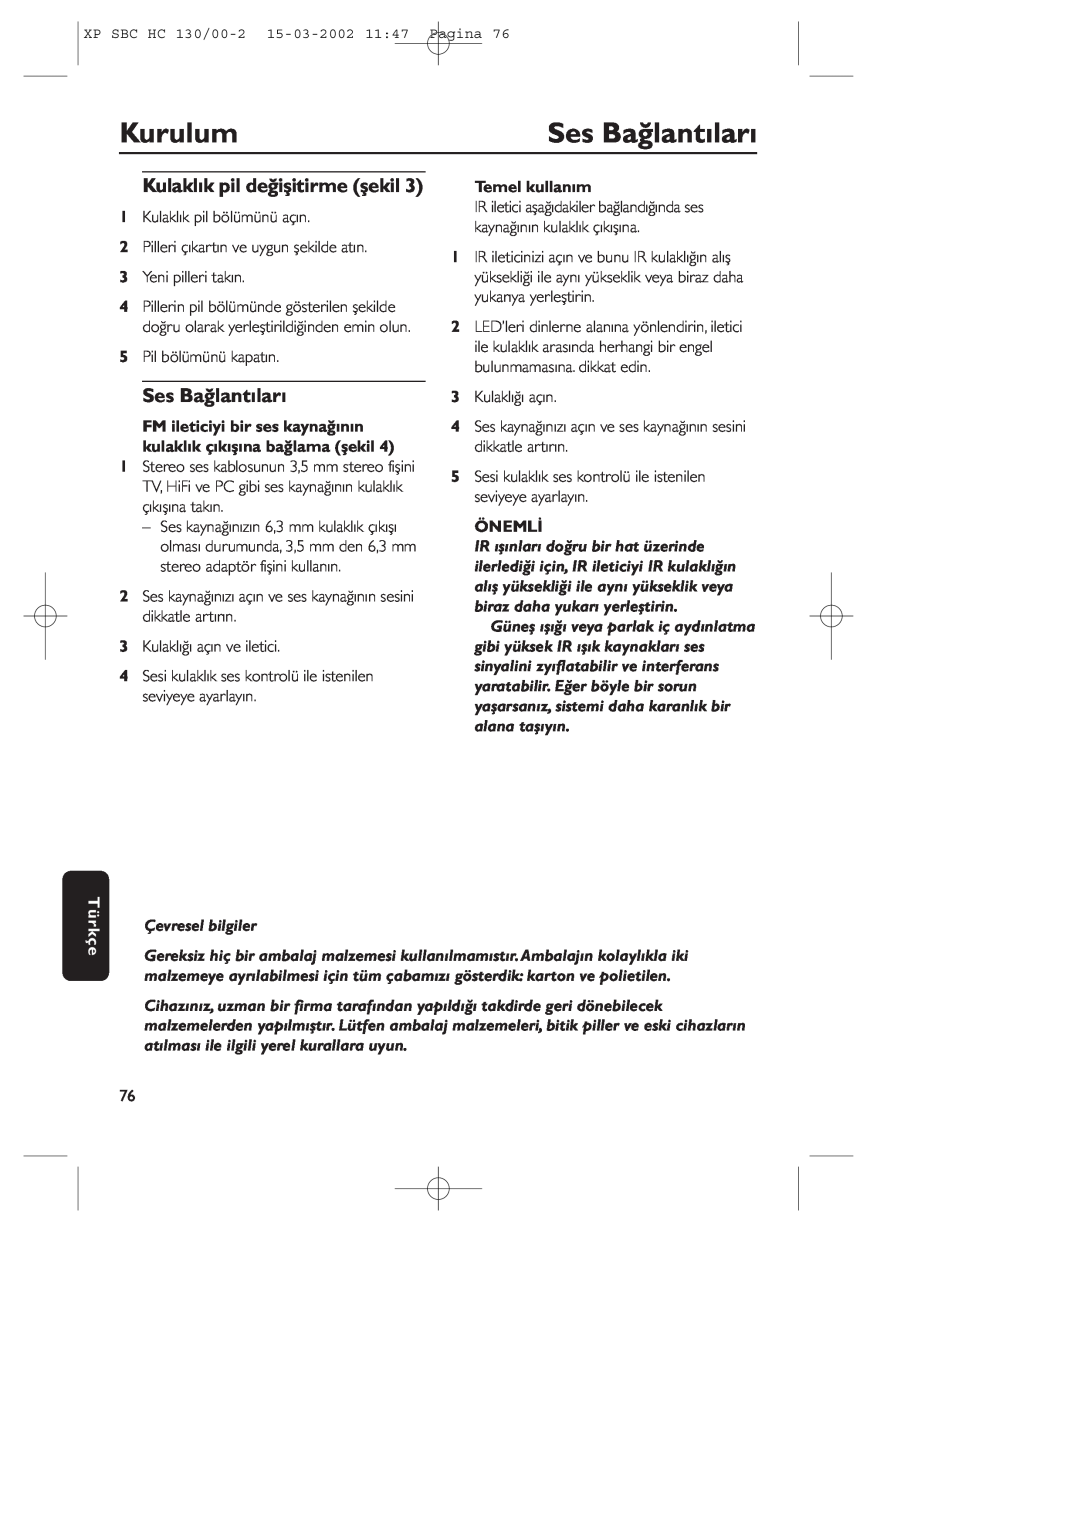 Philips SBC HC130 manual Ses Bağlantıları, Kurulum, Kulaklık pil değişitirme şekil, Temel kullanım, Önemli 